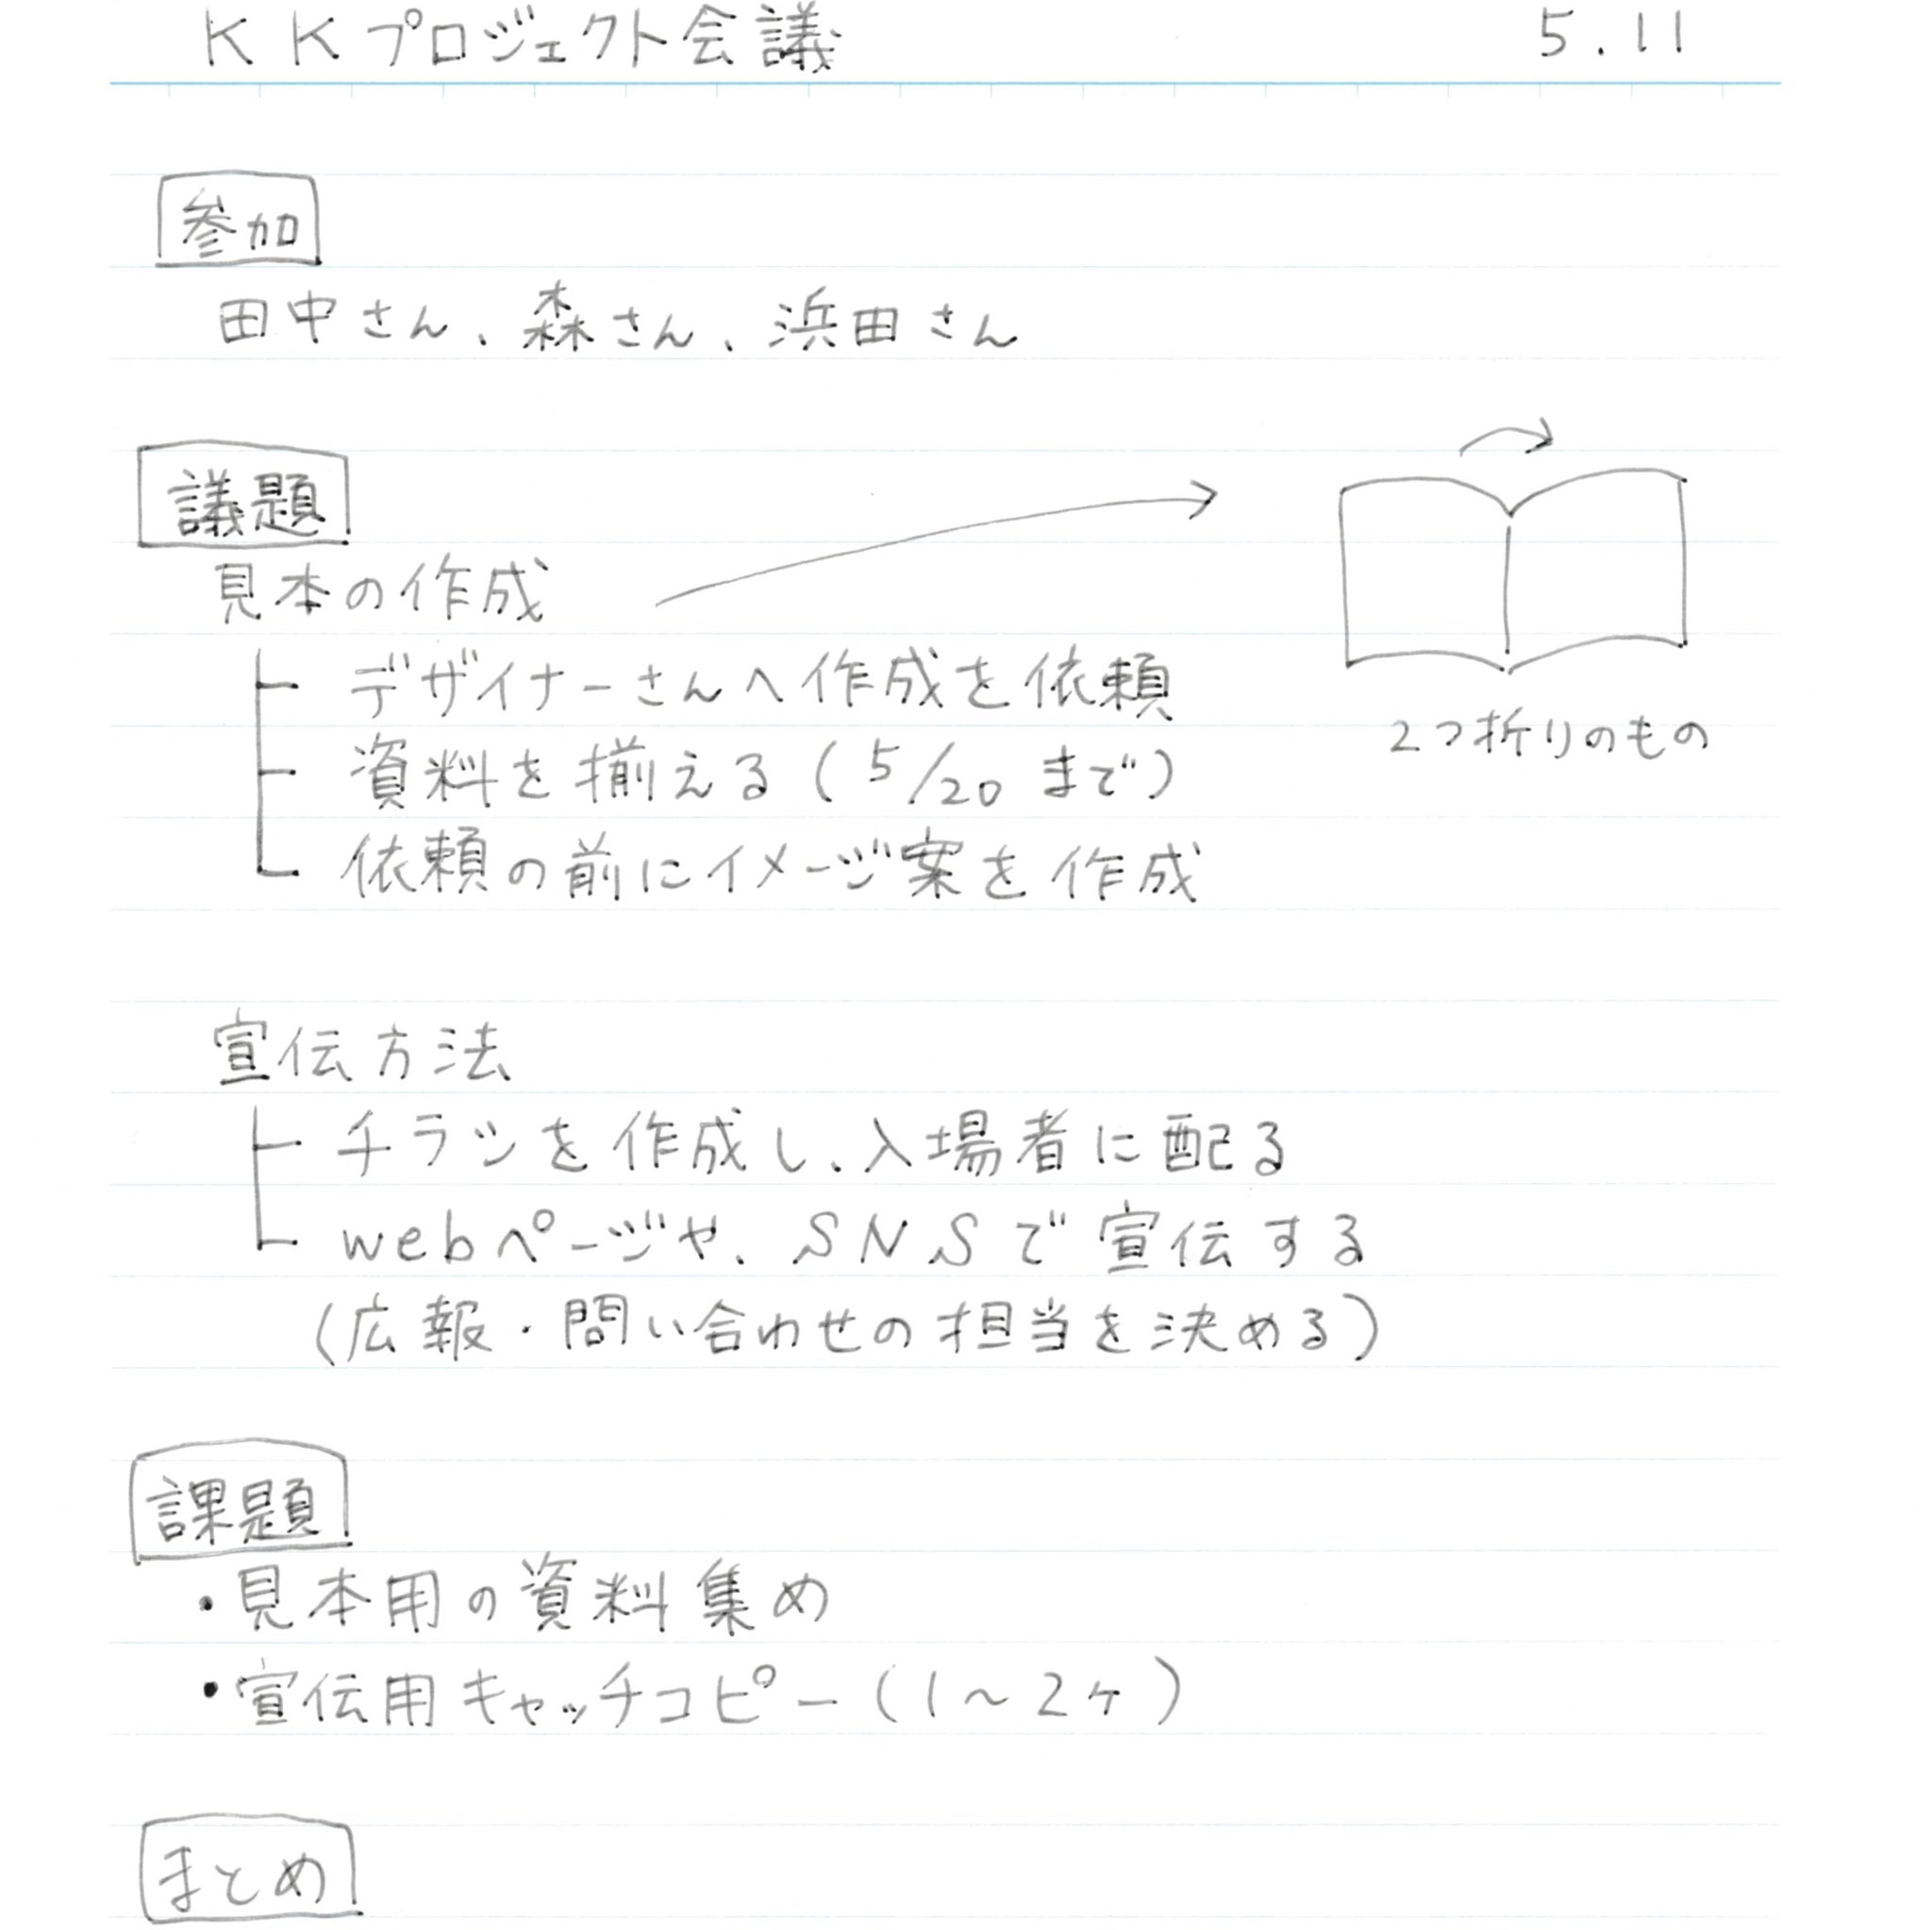 オリジナルノート作成サービス Kaku で選べる罫線たち Twitter